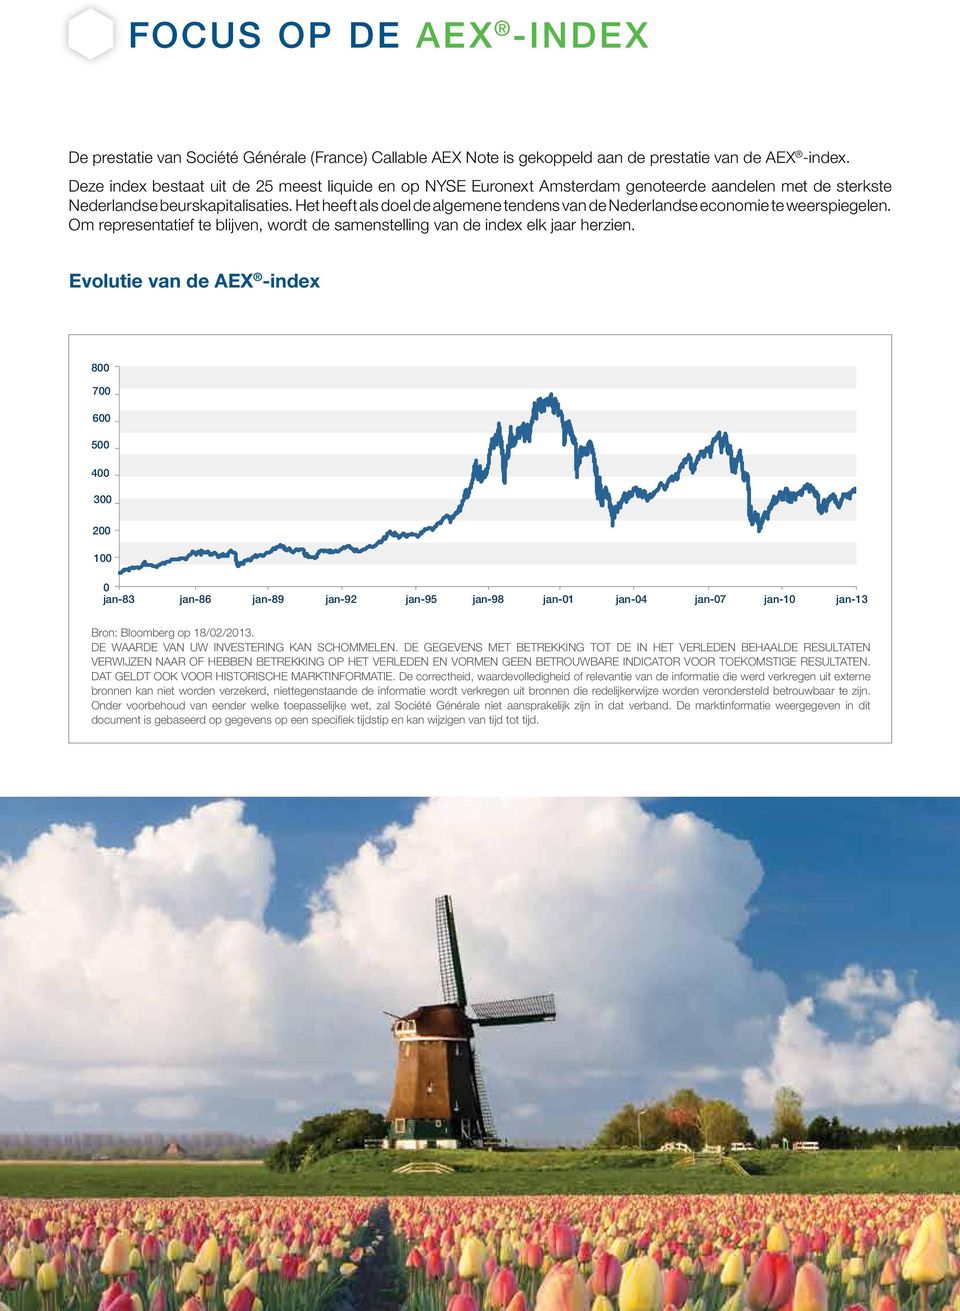 Het heeft als doel de algemene tendens van de Nederlandse economie te weerspiegelen. Om representatief te blijven, wordt de samenstelling van de index elk jaar herzien.